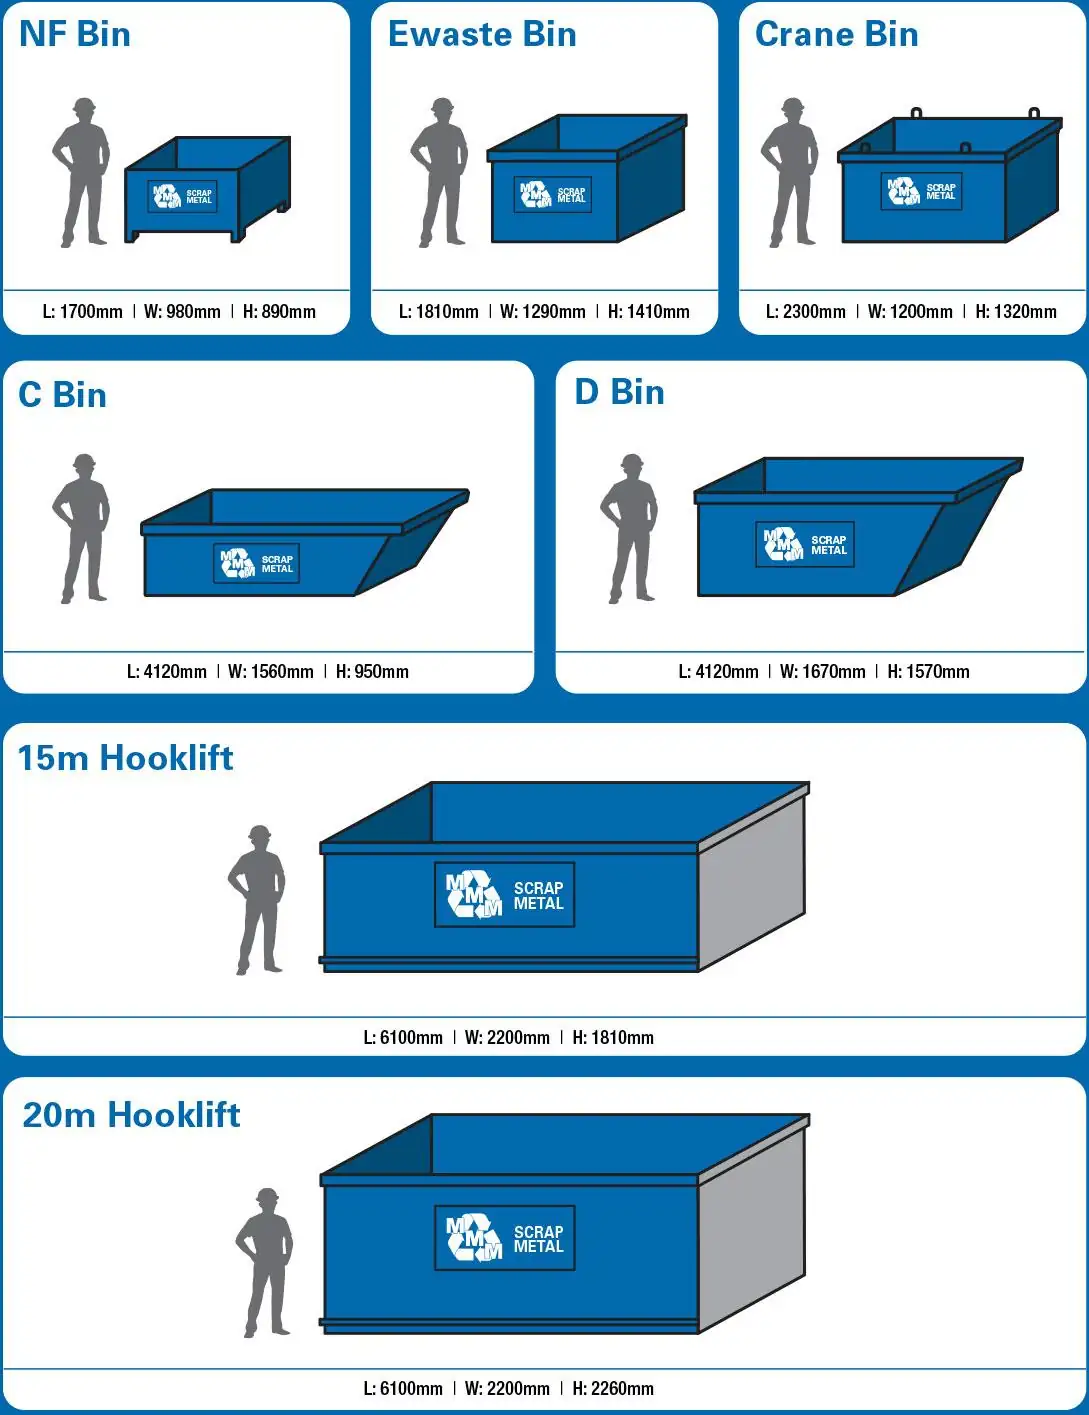 bin types: nf bin e-waste bin crane bin c bin d bin 15m hooklift 20m hooklift